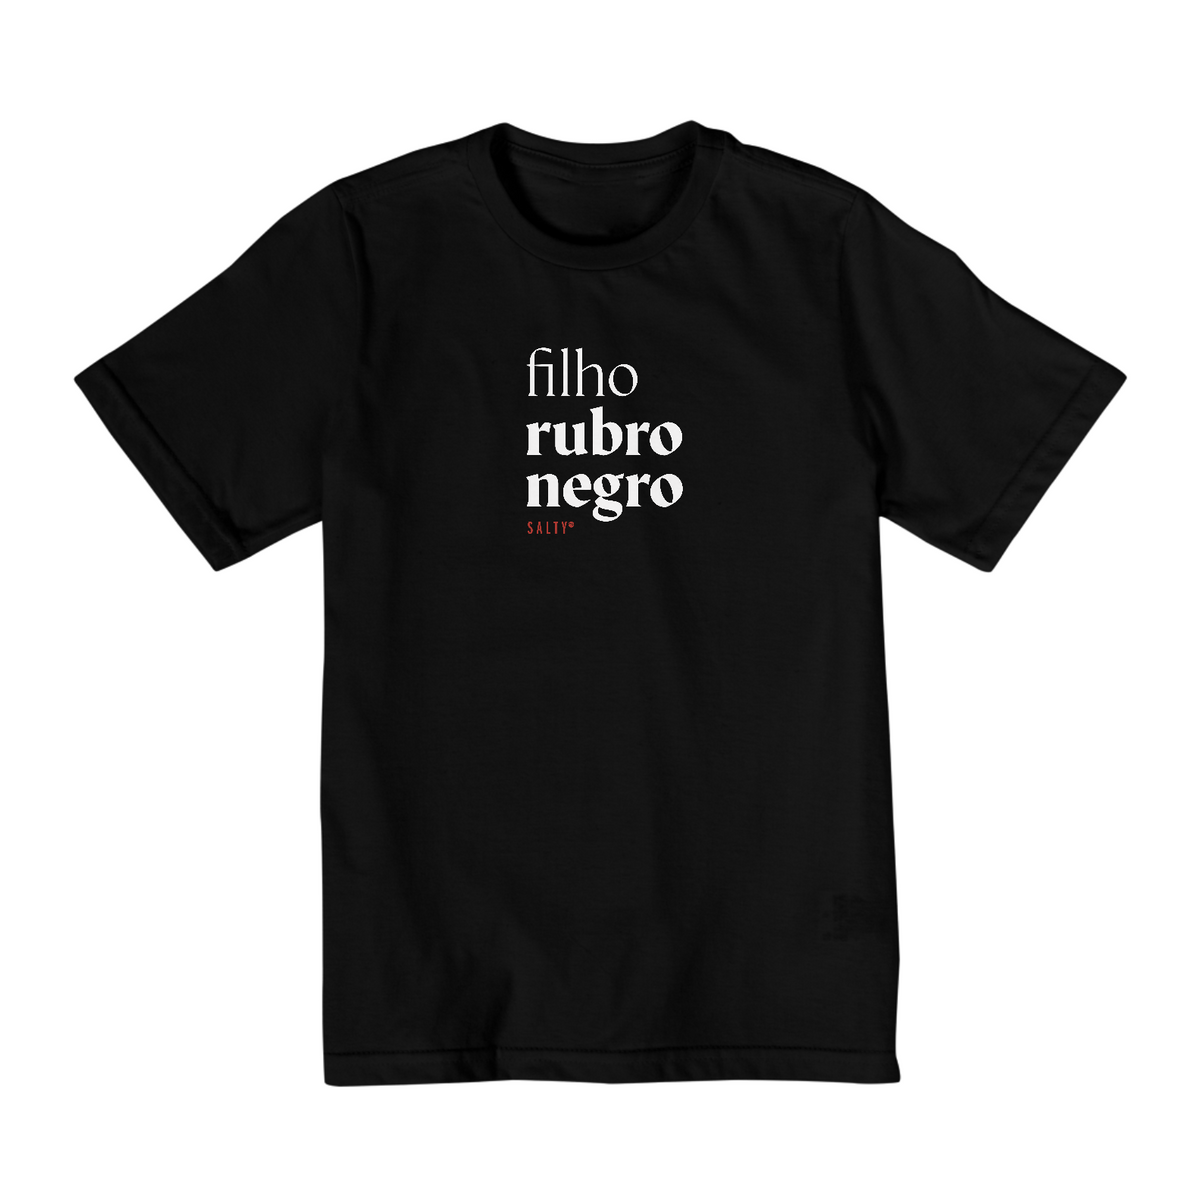 Nome do produto: Camiseta Inf. Filho rubro negro